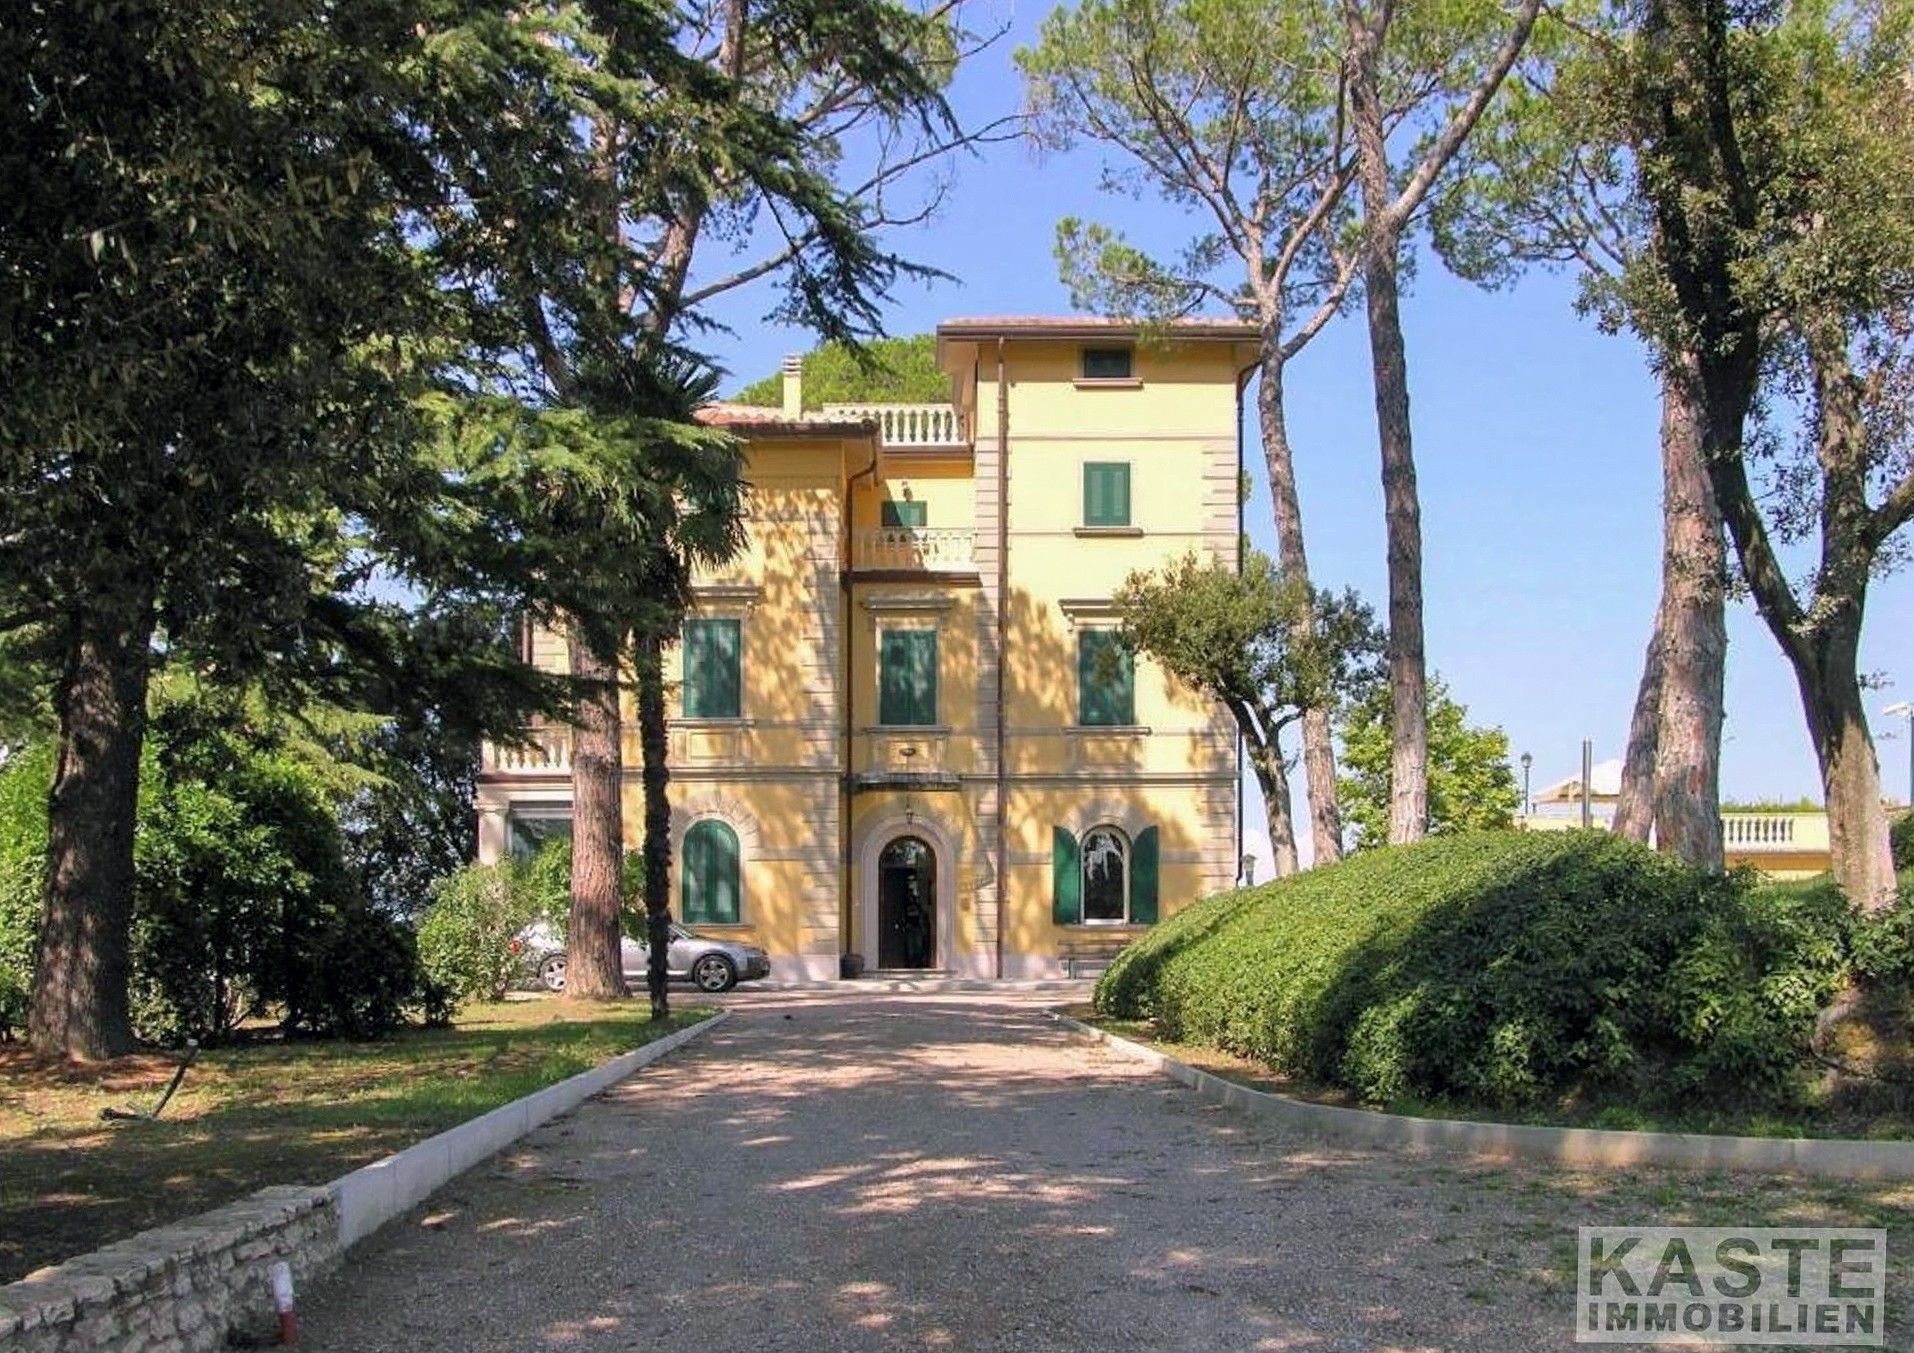 Photos Villa en Toscane avec 5 hectares de terrain et vignoble